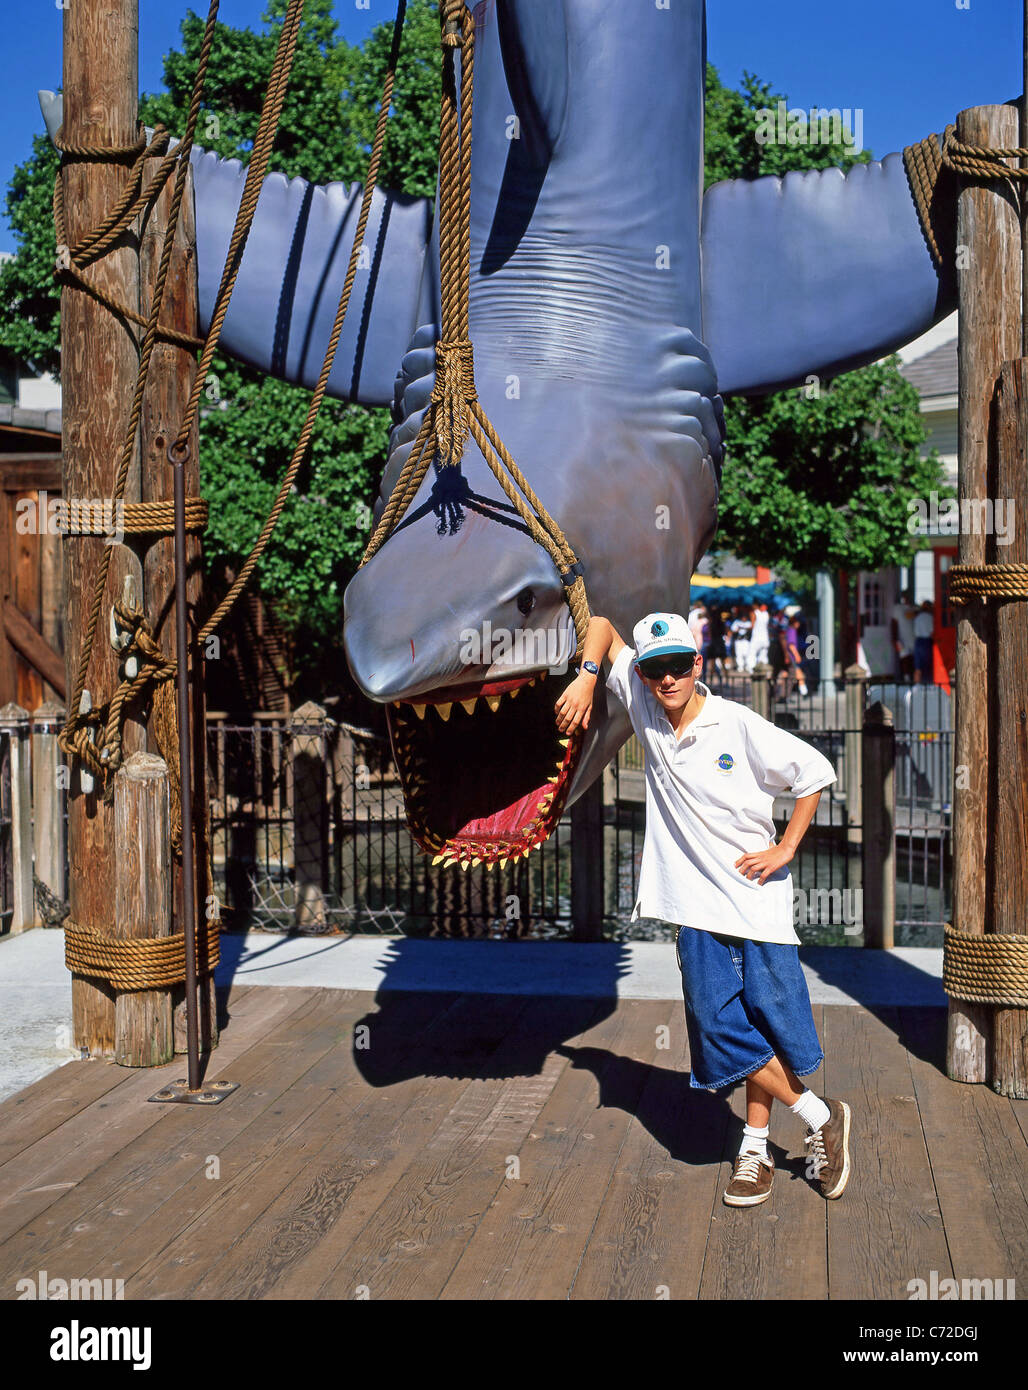 Boy posing at 'Jaws' attraction, Universal Studios, Universal City, Los Angeles, Californie, États-Unis d'Amérique Banque D'Images